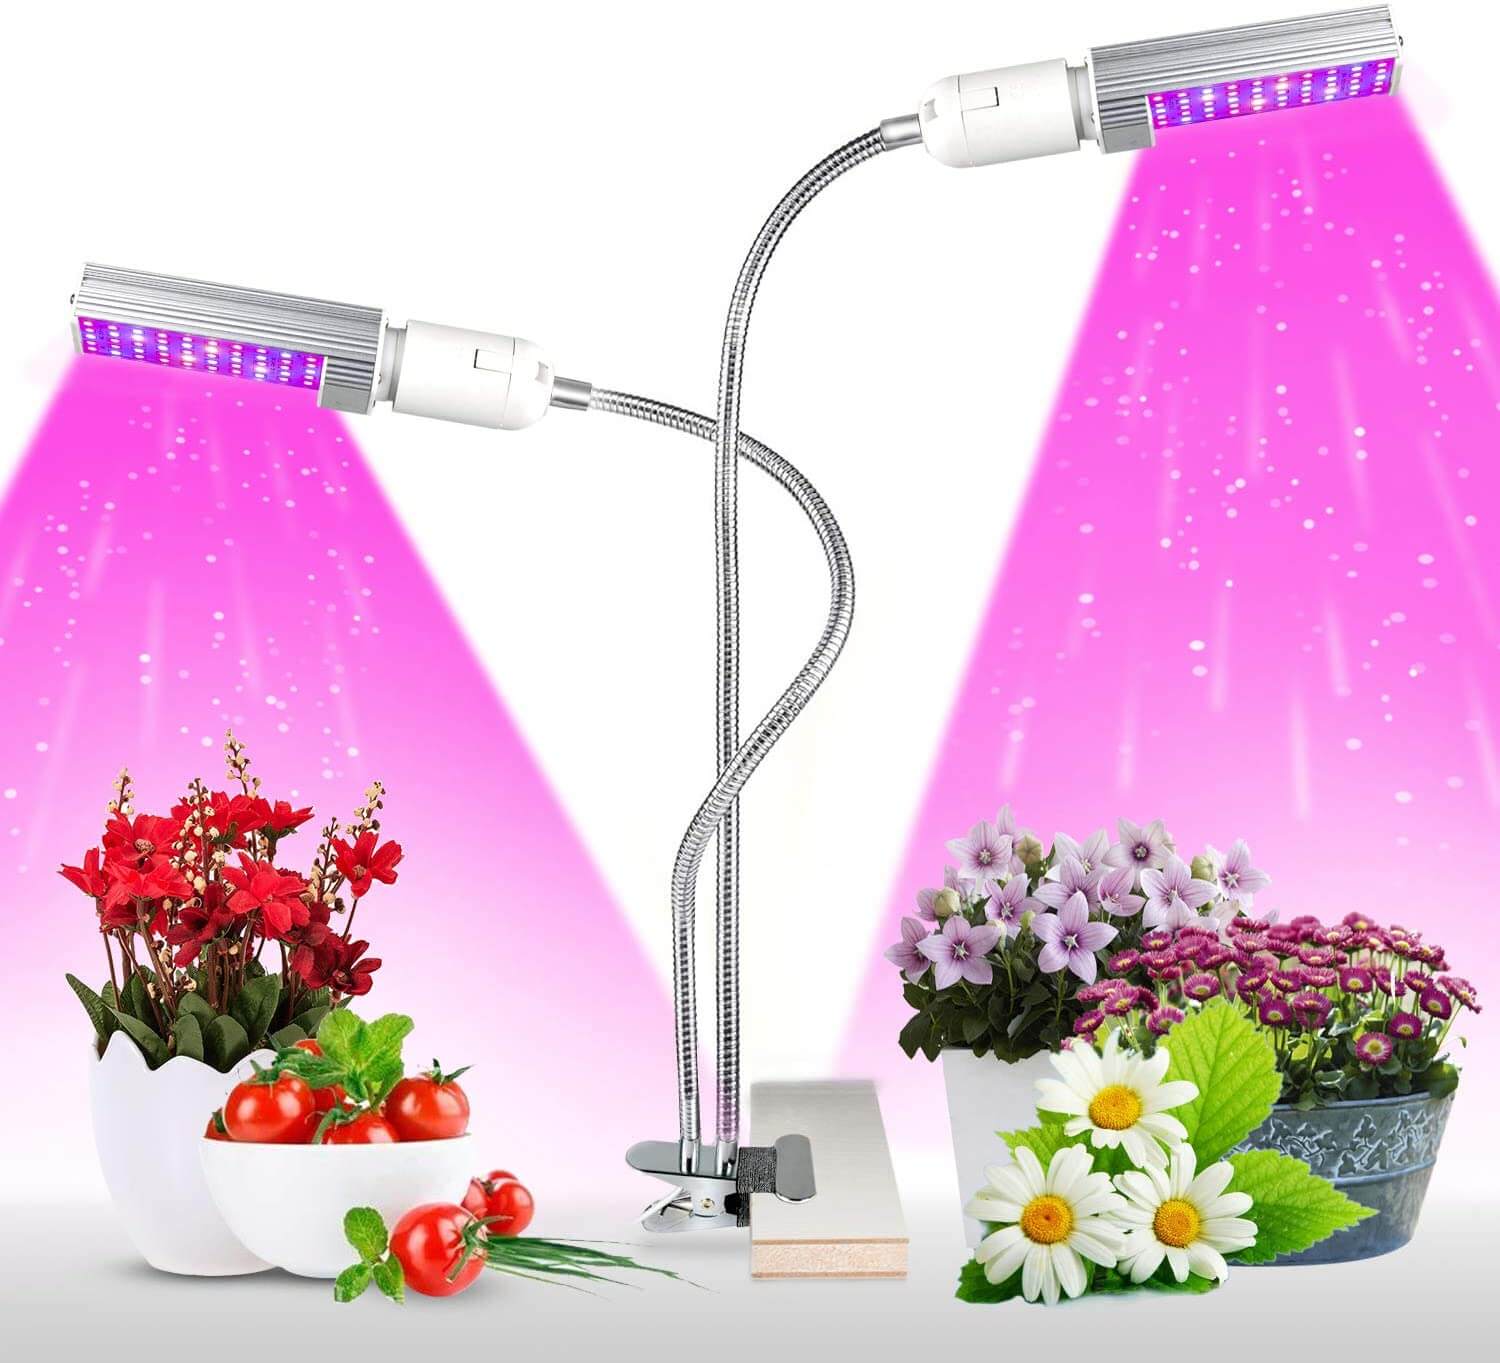 Beslands 100W Lampe de Plante LED Lampe Horticole Floraison Lumière de Croissance des Plantes Lampes de Serres 